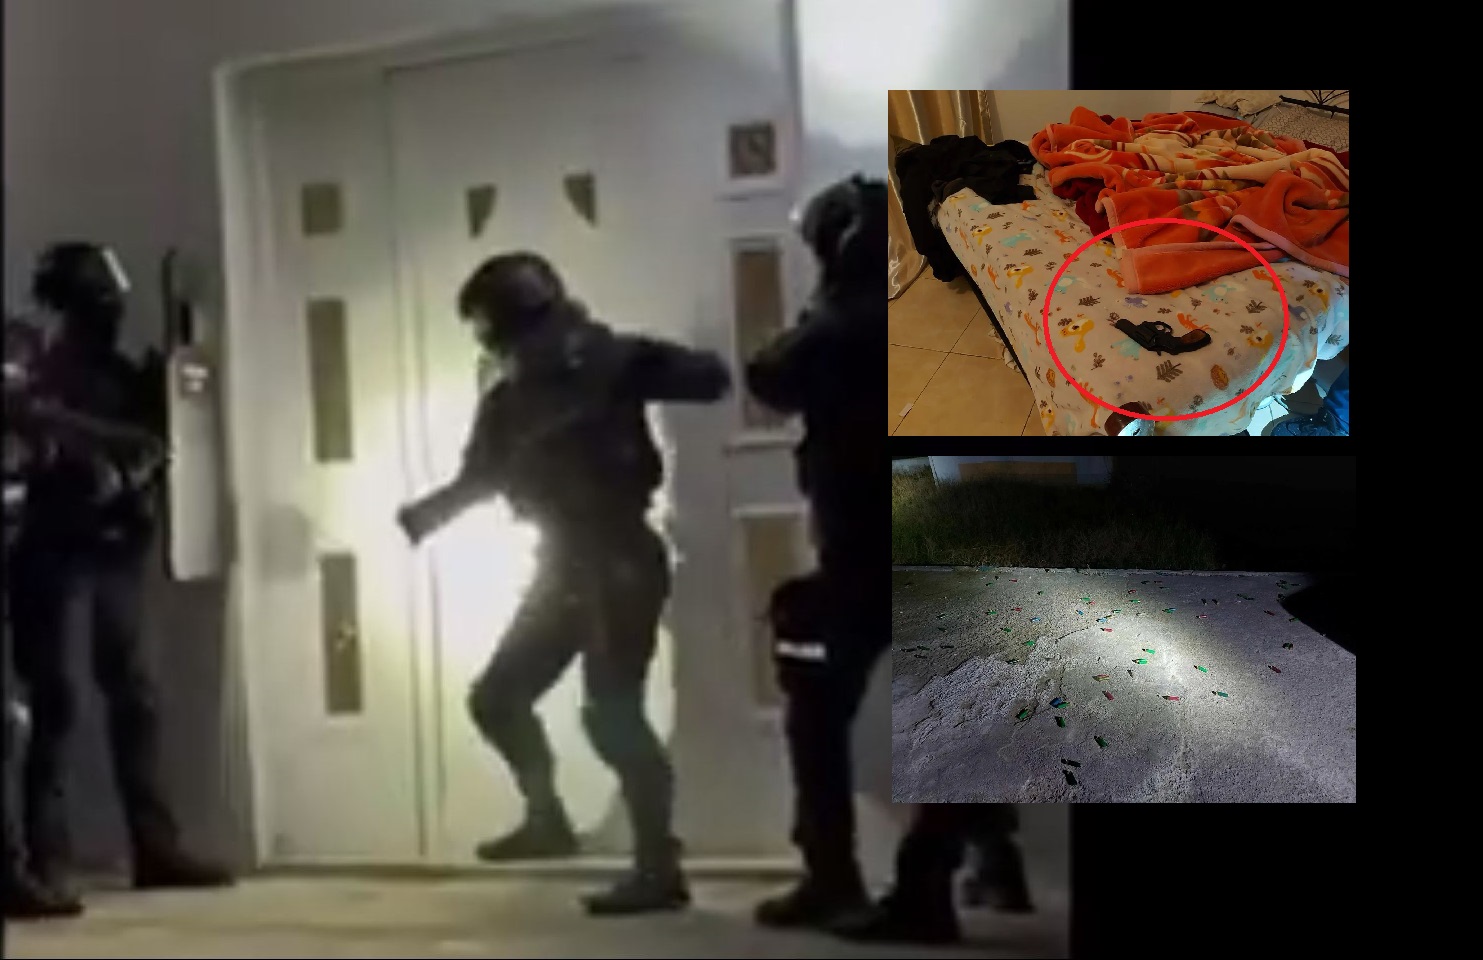 Μεγάλη αστυνομική επιχείρηση στη δυτική Αττική - Βρέθηκαν όπλα και σφαίρες σε κρεβάτια